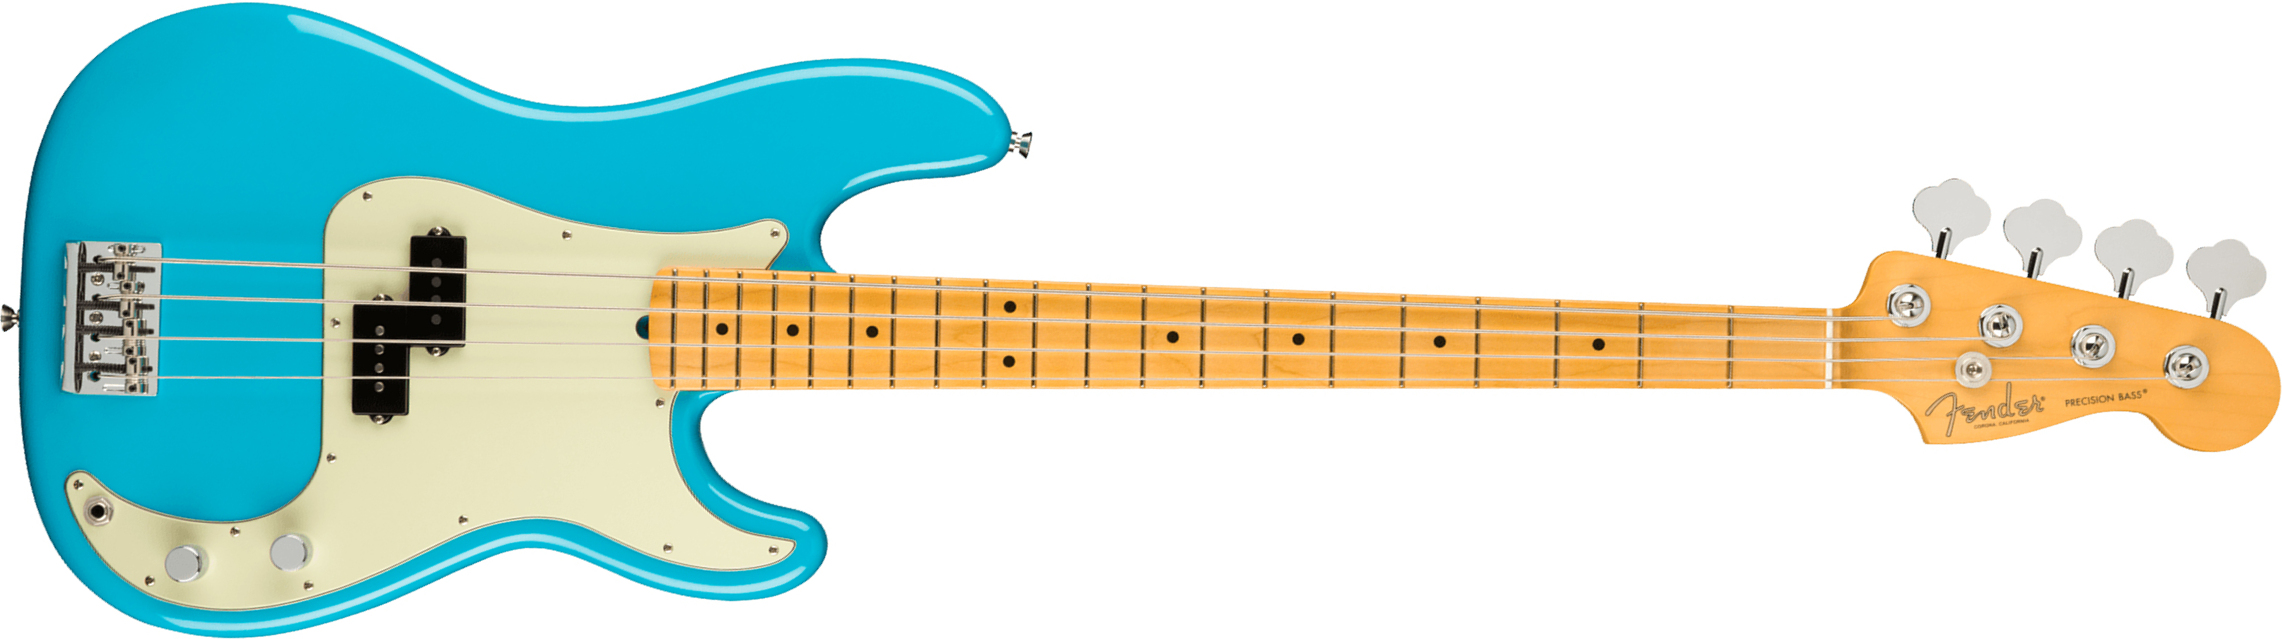 Fender Precision Bass American Professional Ii Usa Mn - Miami Blue - Solid body elektrische bas - Main picture